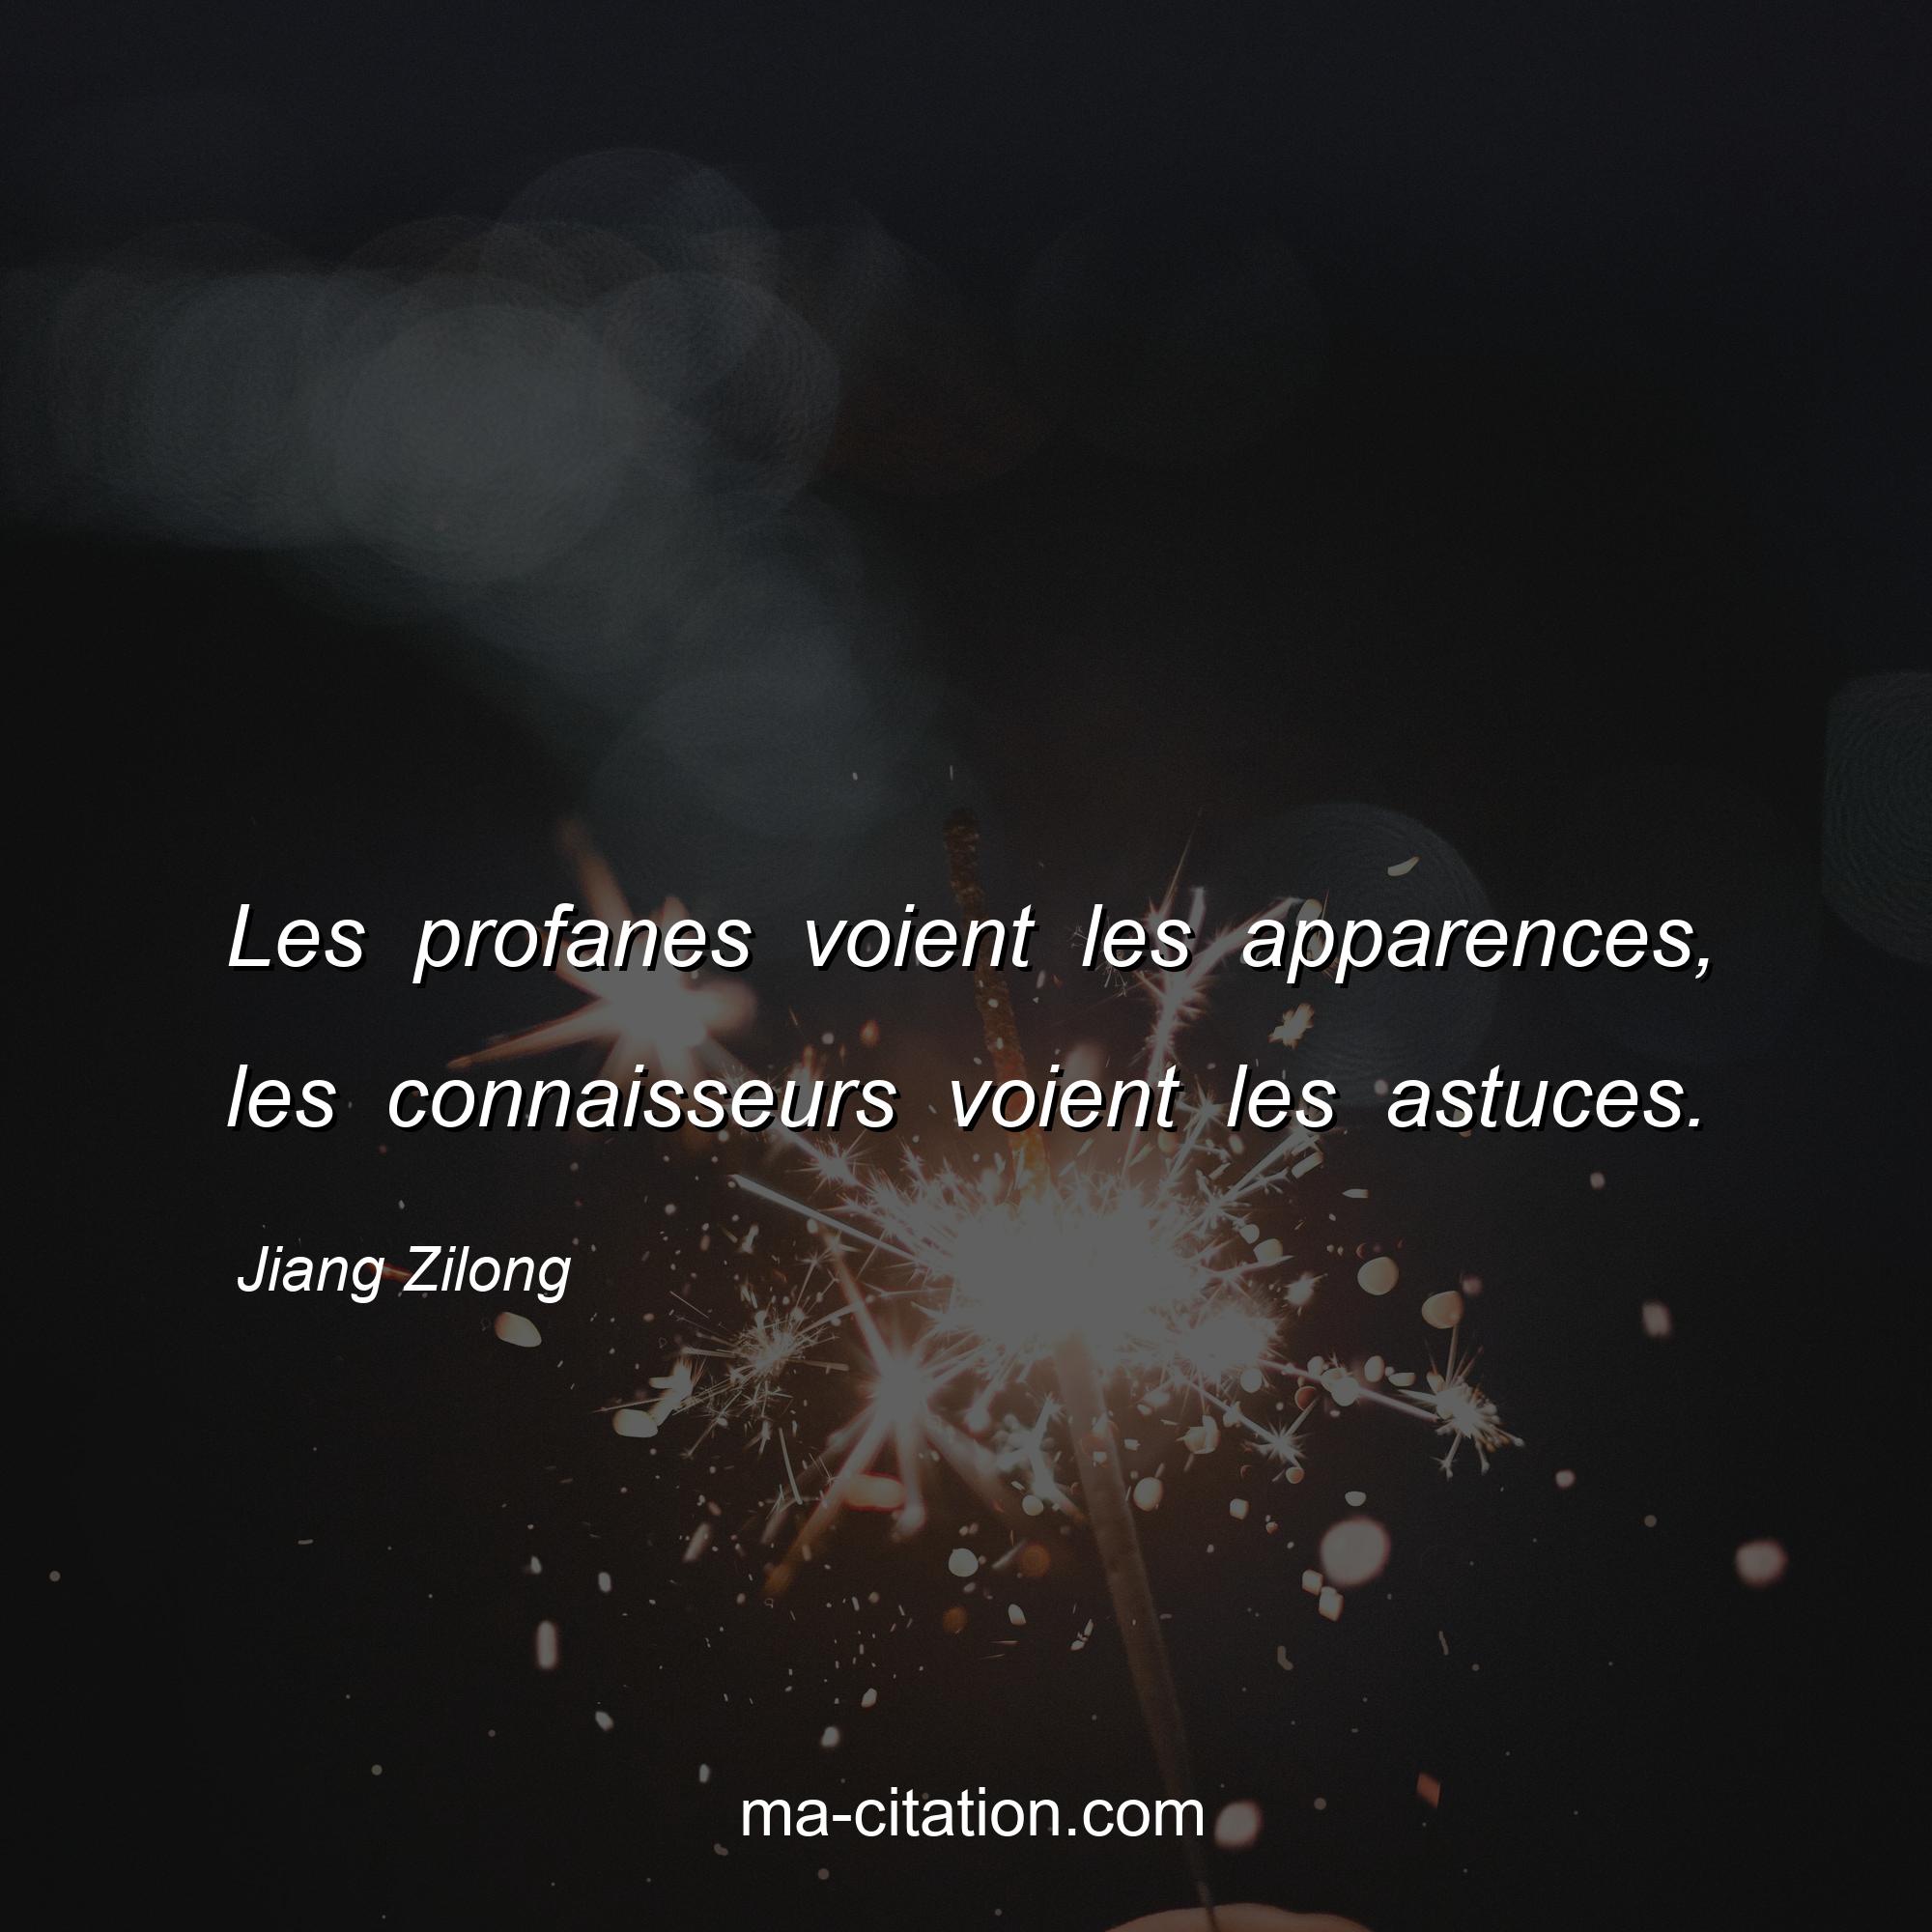 Jiang Zilong : Les profanes voient les apparences, les connaisseurs voient les astuces.